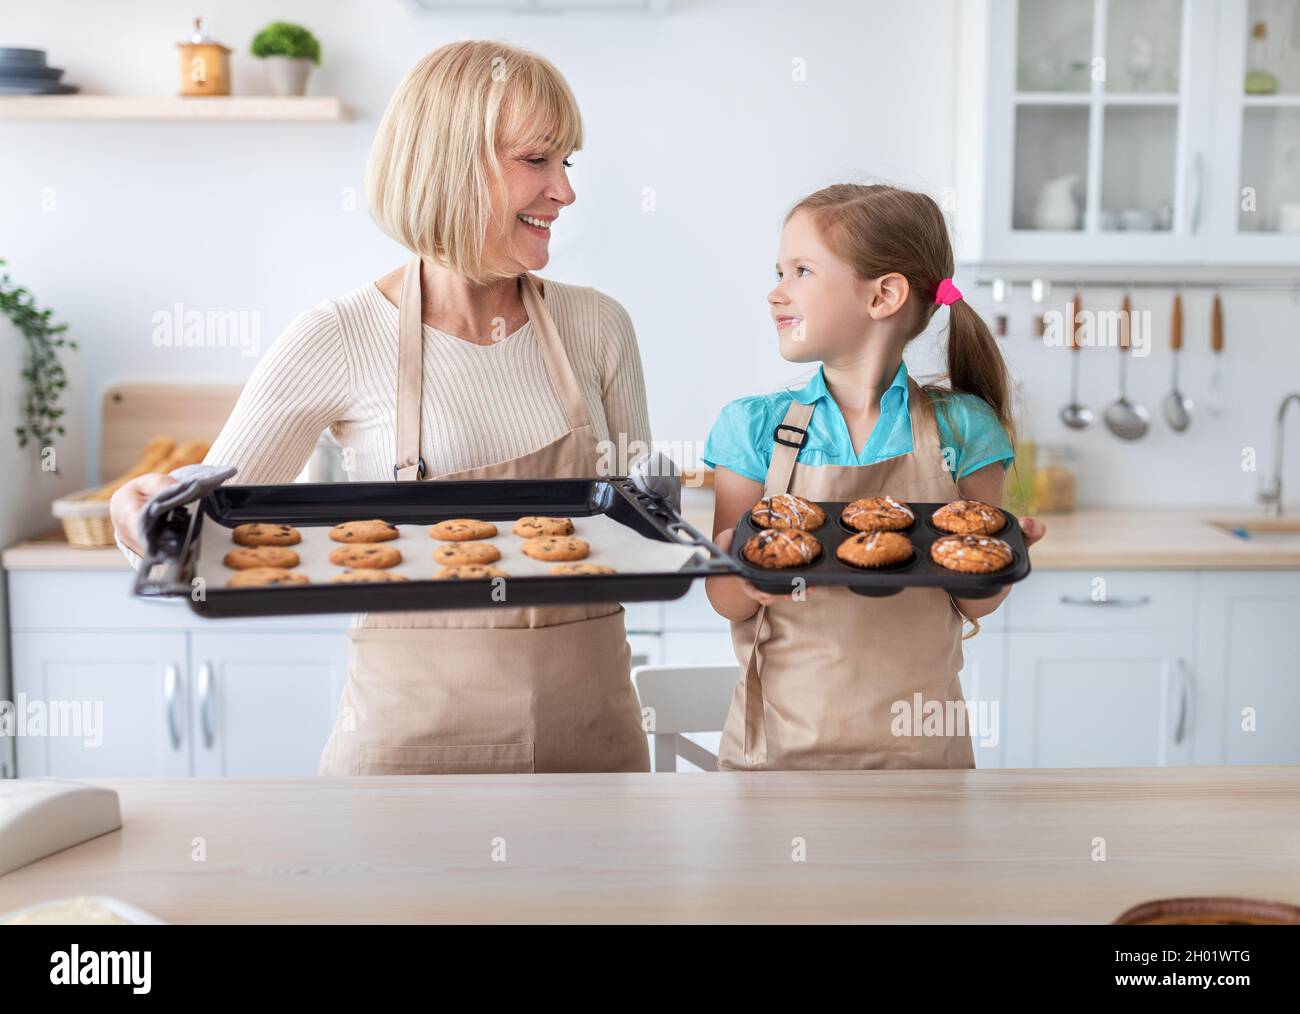 Aprender a cocinar. Retrato de abuela madura sonriente y nieta que muestra sabrosas galletas recién horneadas y magdalenas en la bandeja mientras está de pie Foto de stock